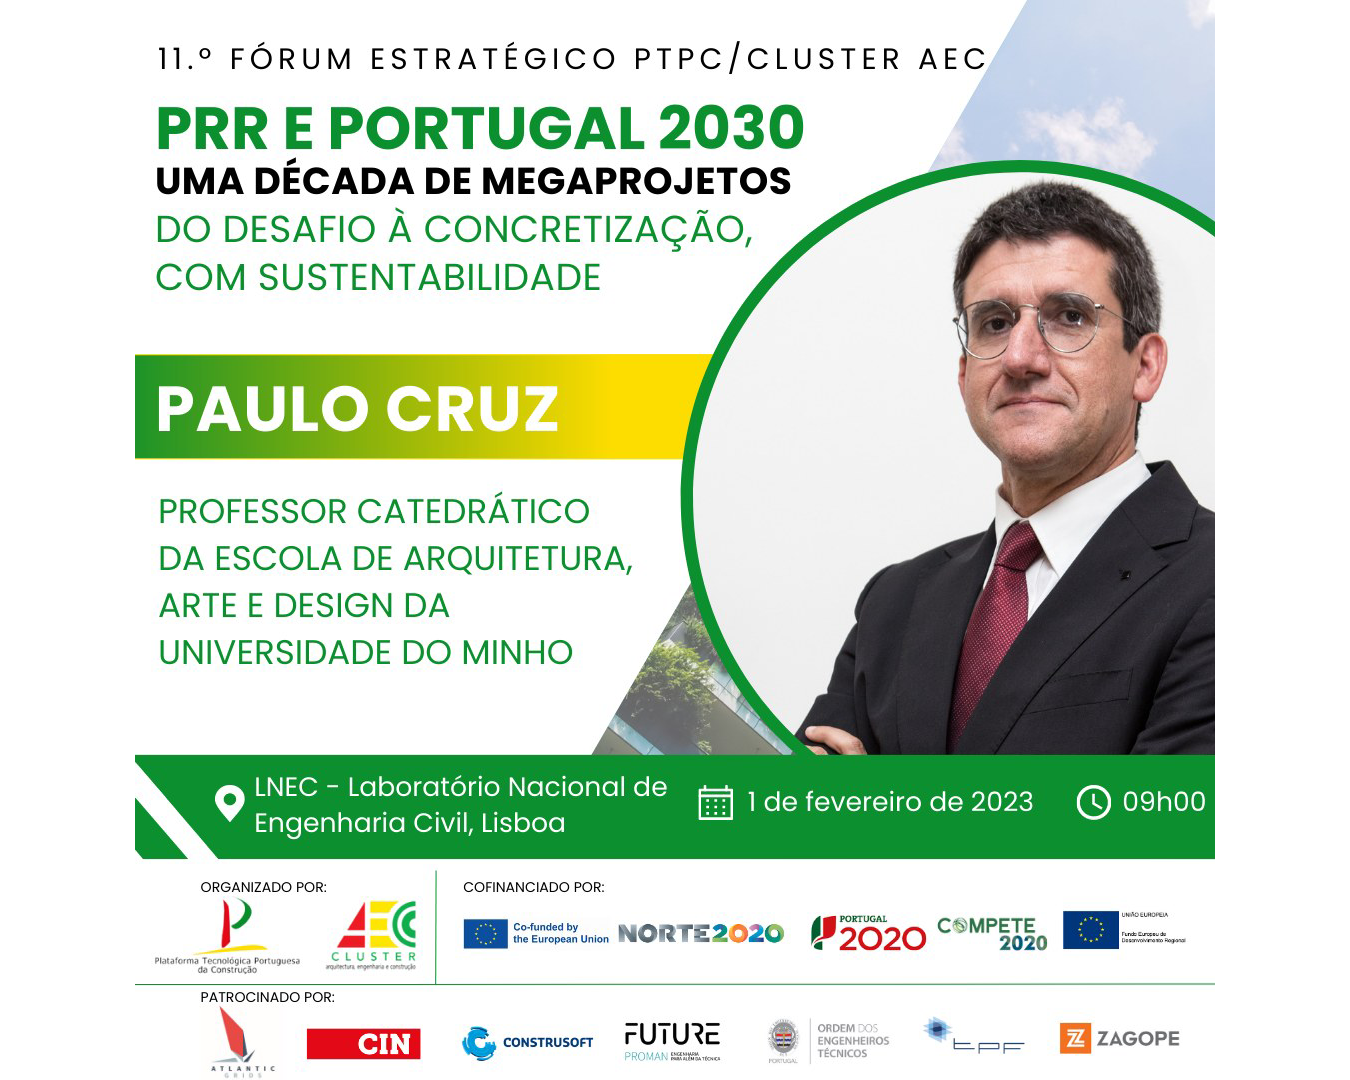 Strategic Annual Forum "PRR e PORTUGAL 2030 - Uma década de Megaprojetos - do desafio à concretização, com sustentabilidade" com participação de Paulo Cruz image